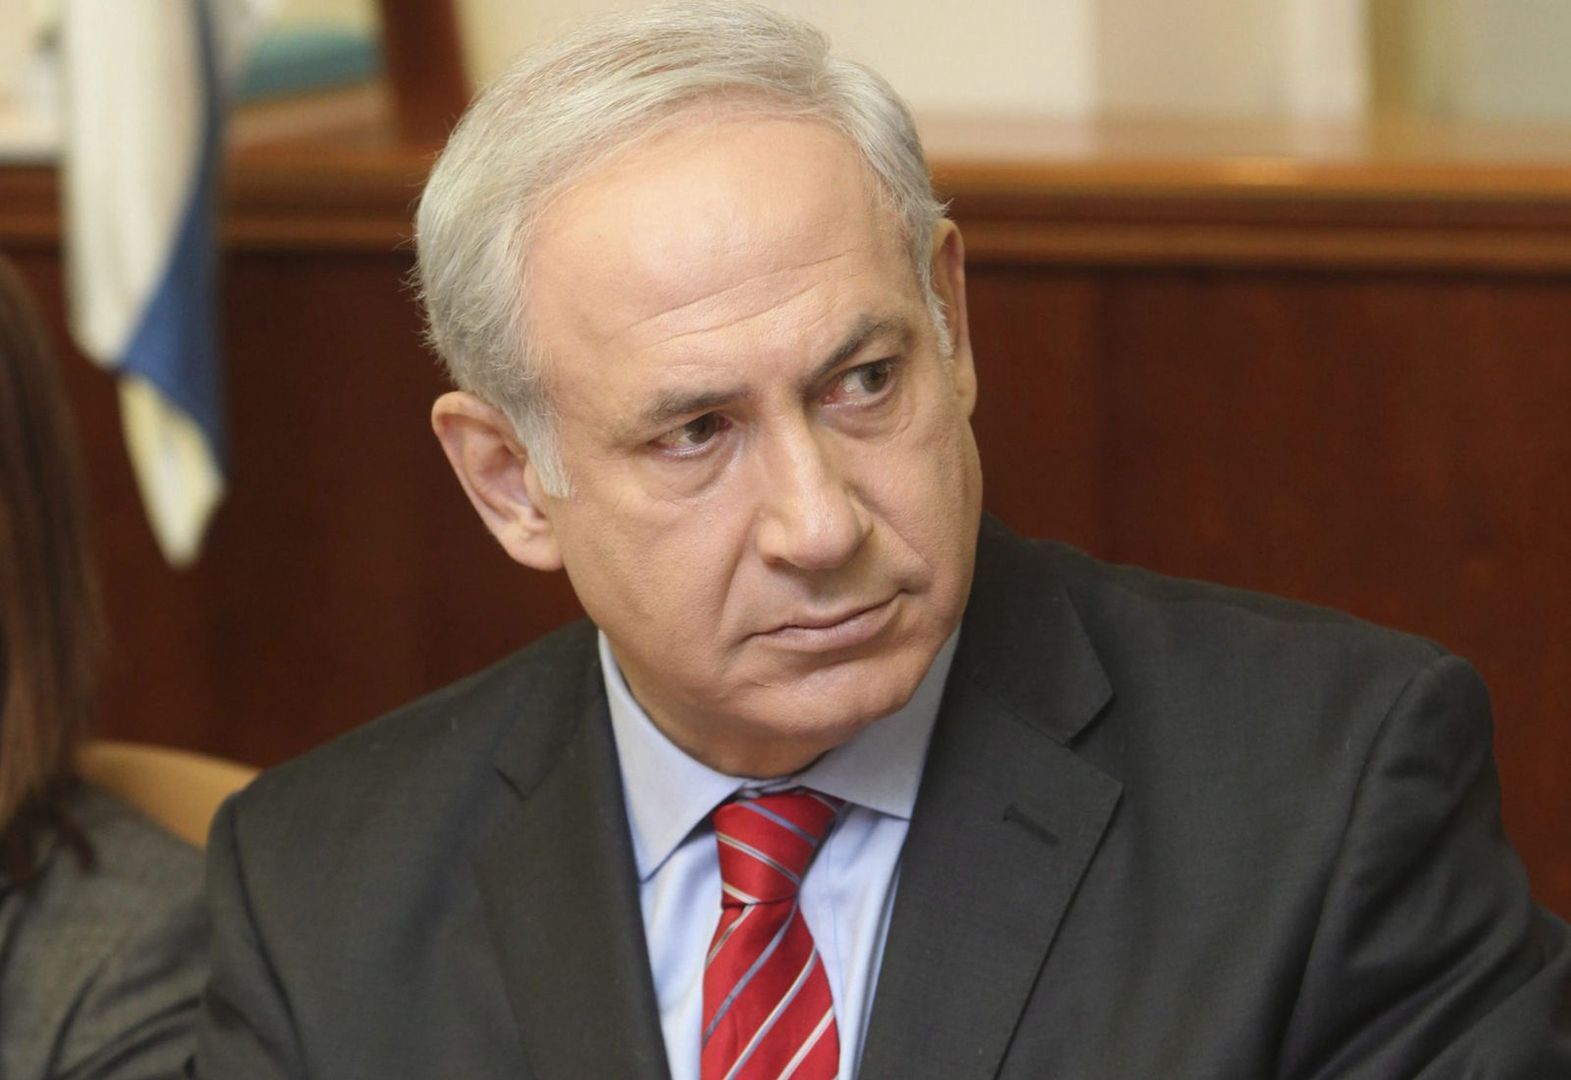 Wniosek o nakaz aresztowania Netanjahu. Zachód reaguje